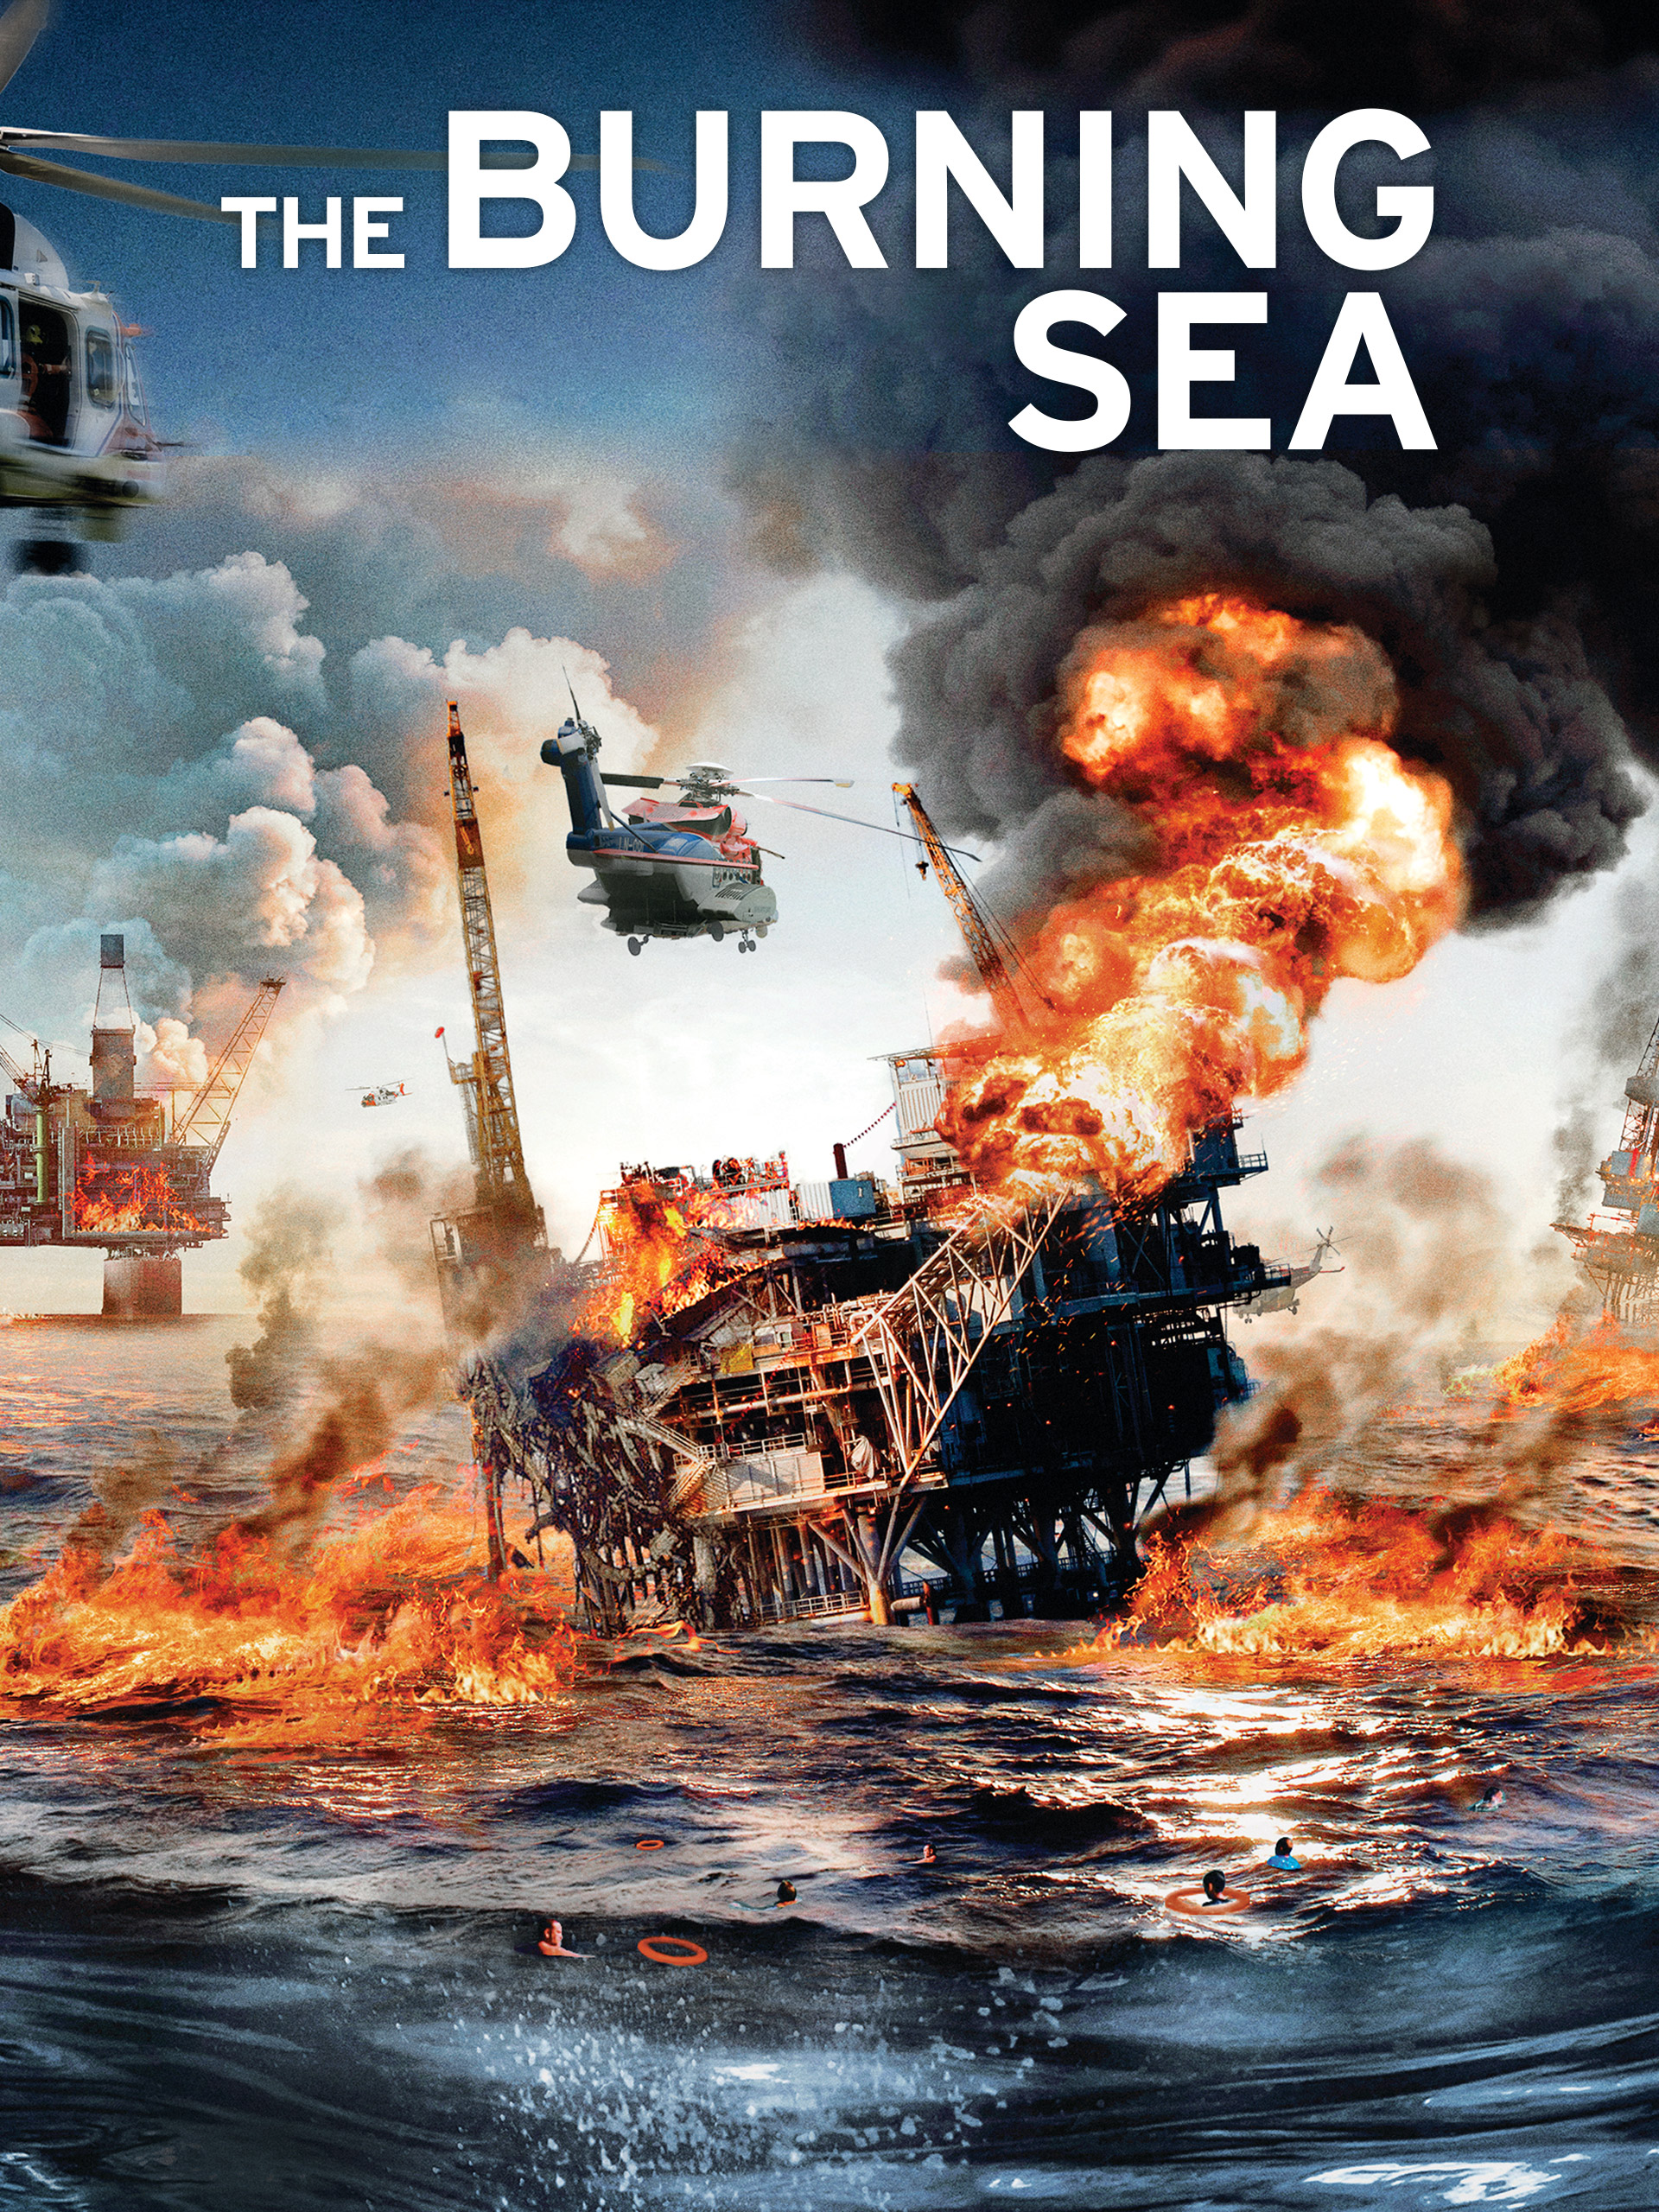 ดูหนังออนไลน์ฟรี หนังใหม่ล่าสุด THE BURNING SEA (2021) มหาวิบัติหายนะทะเลเพลิง